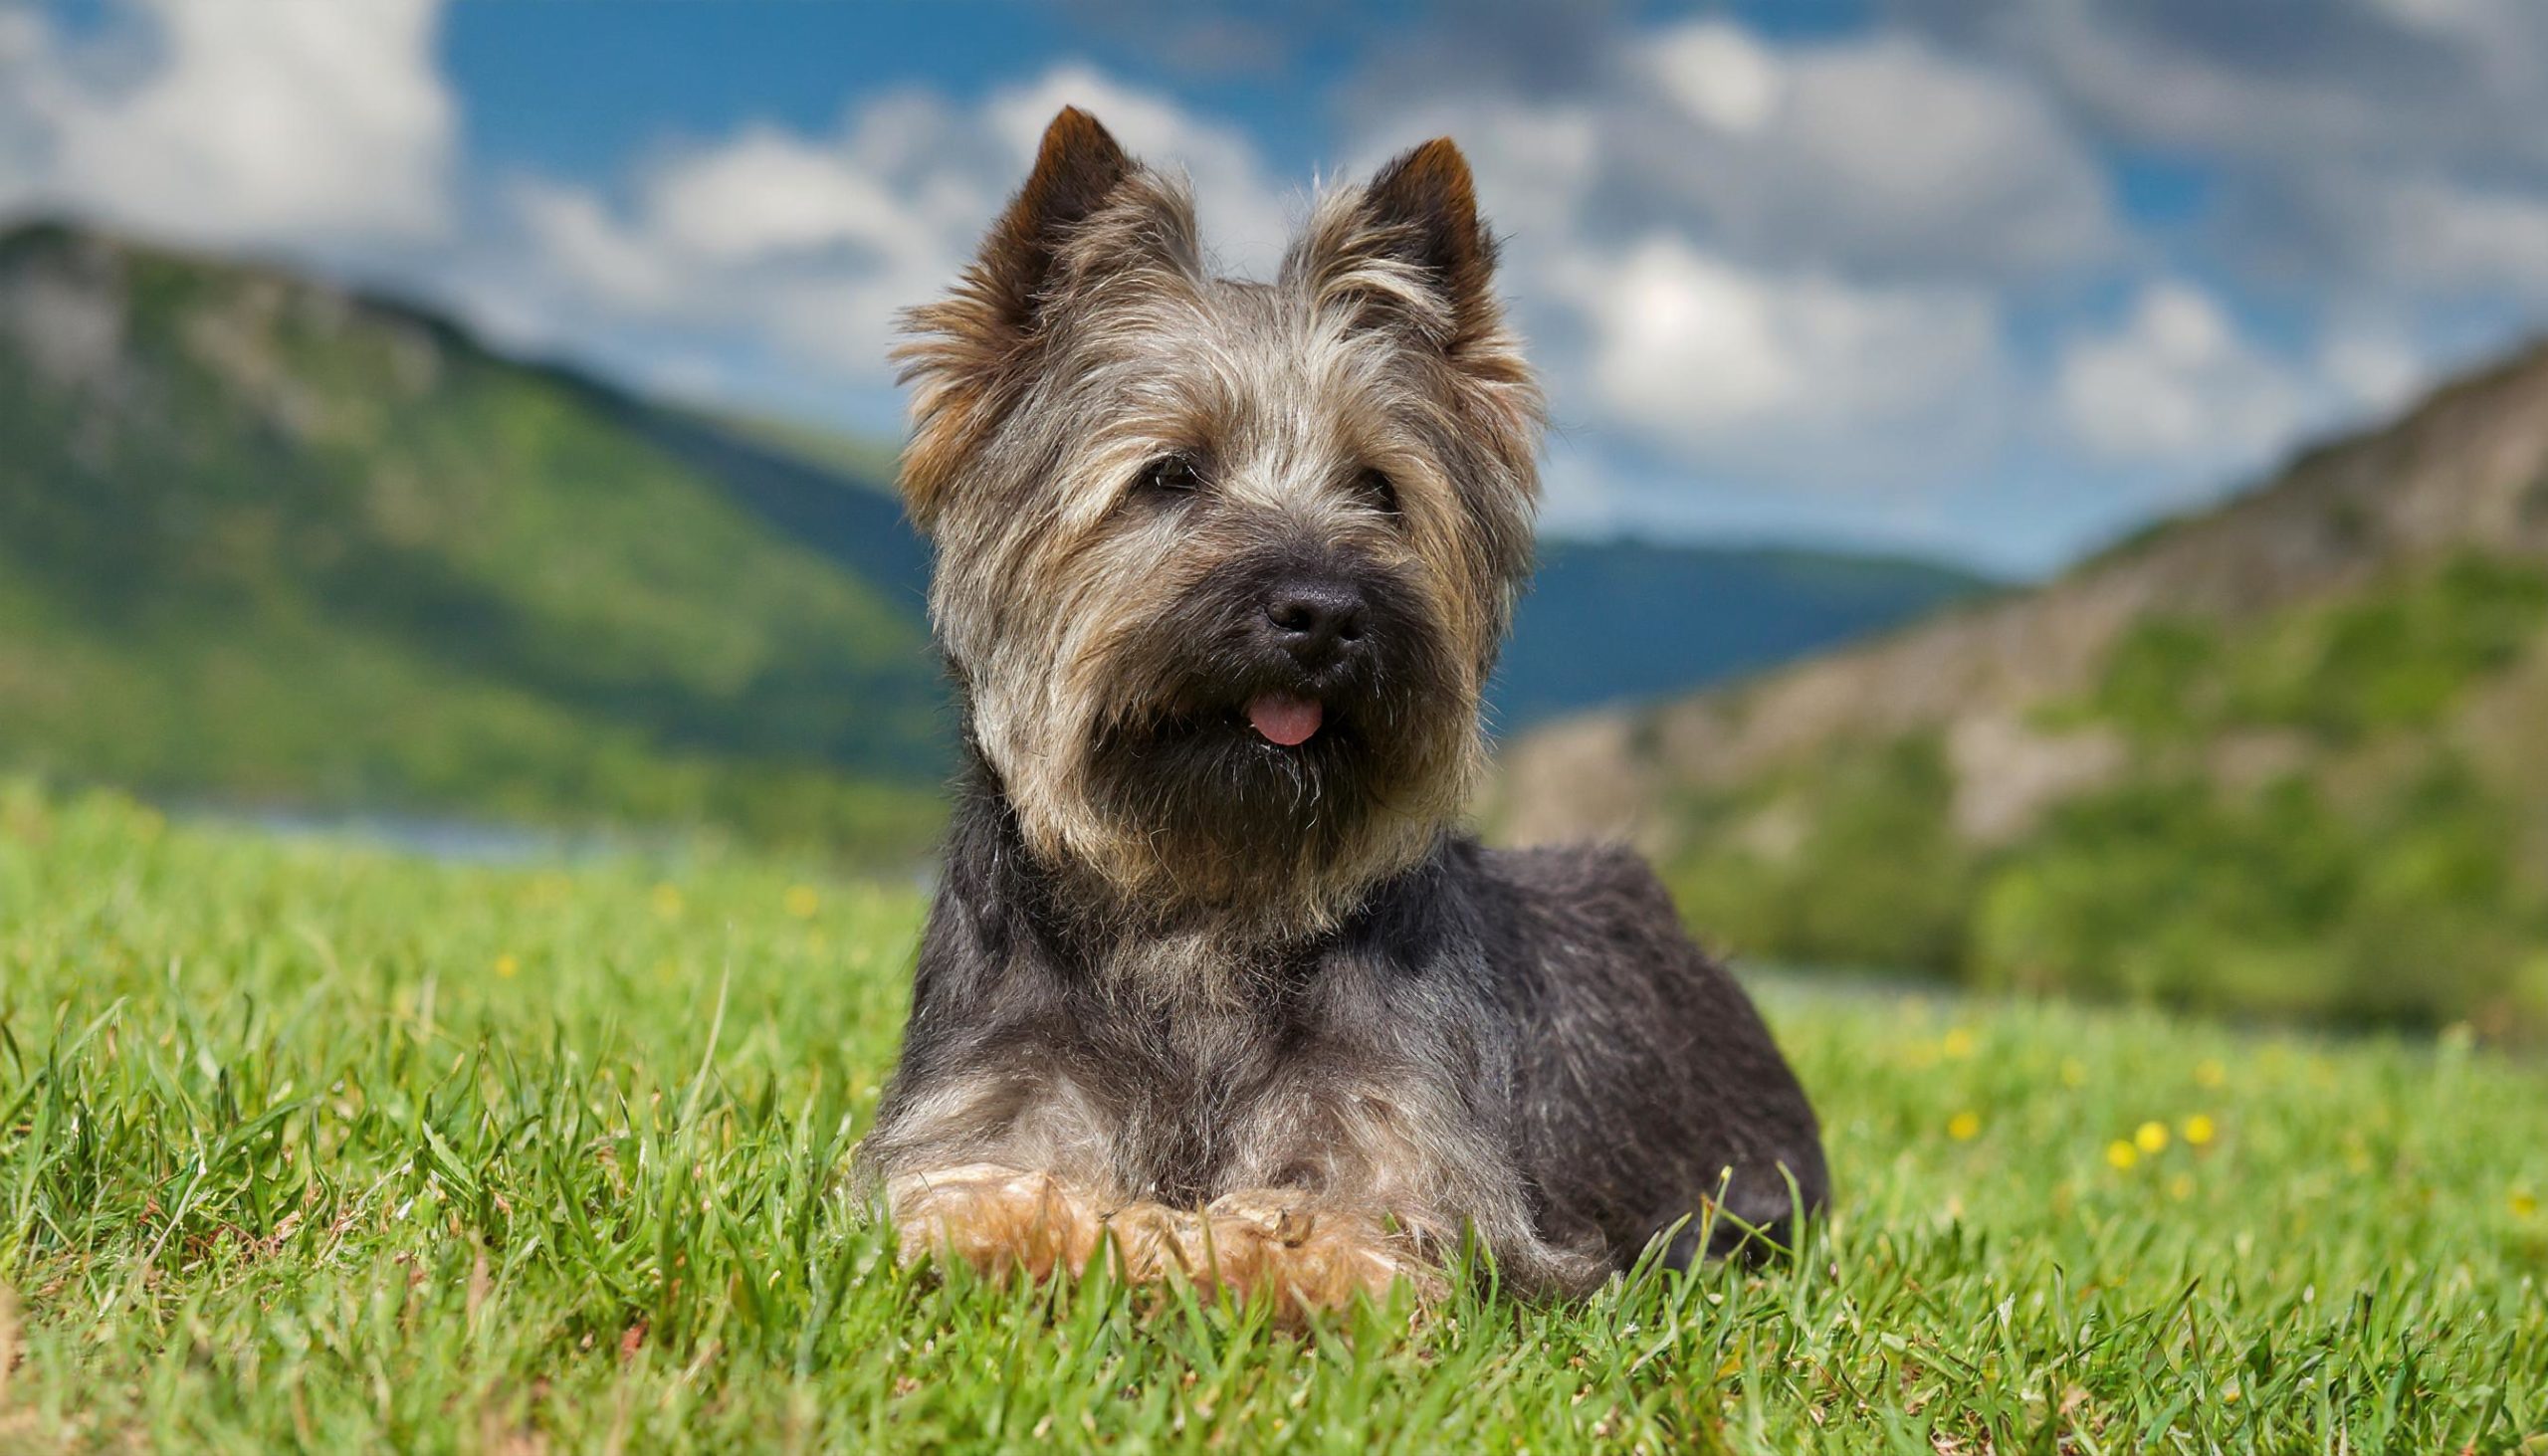 De Cairn Terrier is een kleine en stevige hond met staande oren en een kort rechtop staand staartje